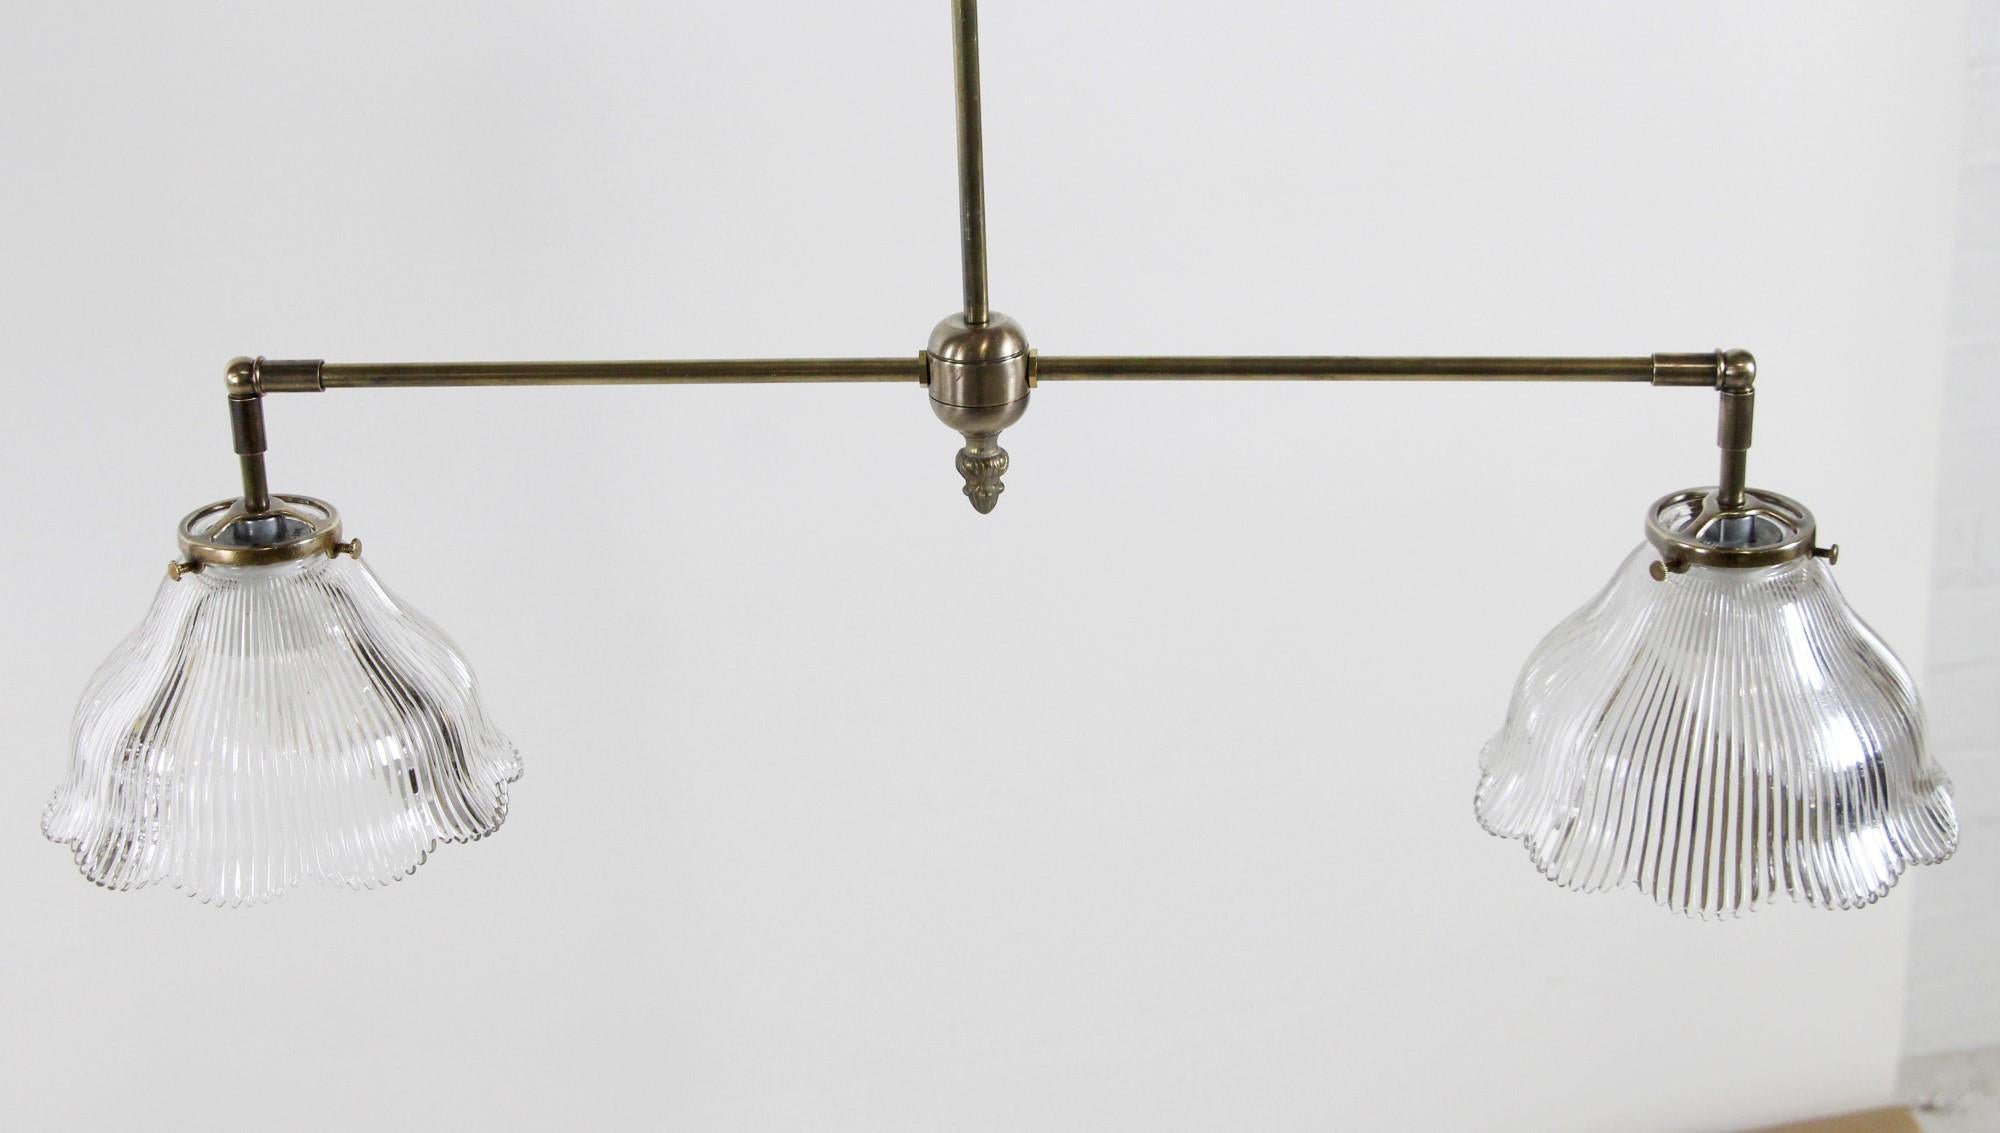 Lampe suspendue de style industriel en laiton des années 2010, équipée de deux abat-jours en verre prismatique à volutes, transparent et antique. Cet article peut être vu dans notre établissement du 400 Gilligan St à Scranton, PA.